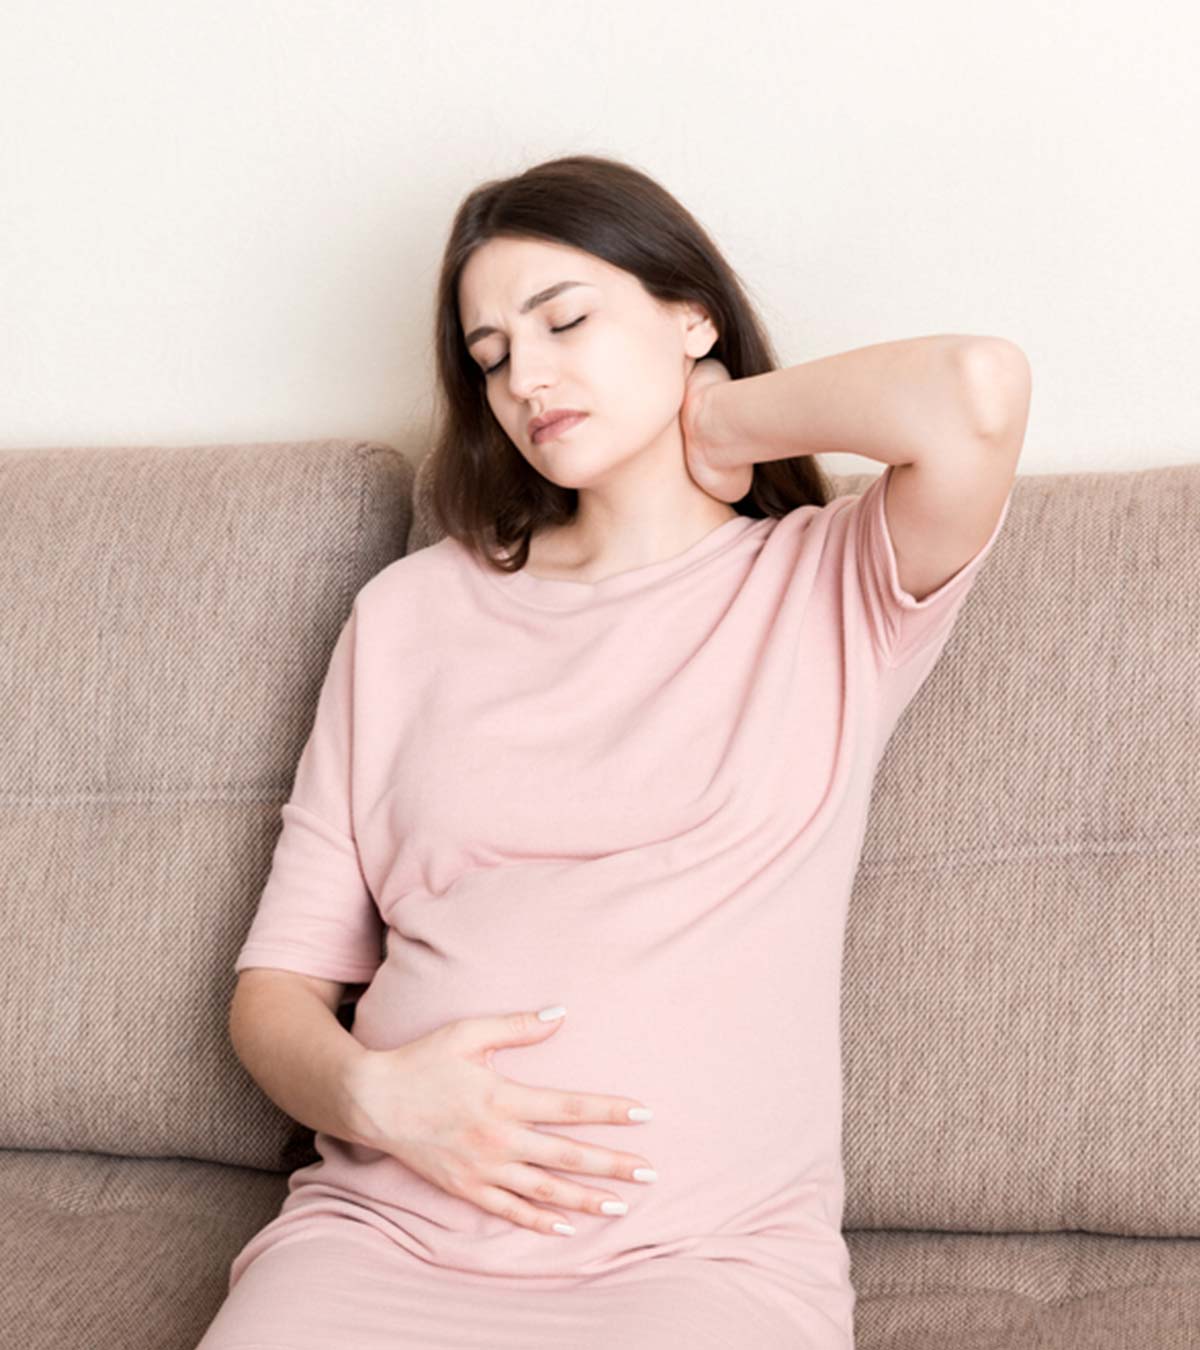 प्रेगनेंसी के दौरान गर्दन में दर्द होना: कारण, घरेलू इलाज व व्यायाम  | Neck Pain During Pregnancy In Hindi